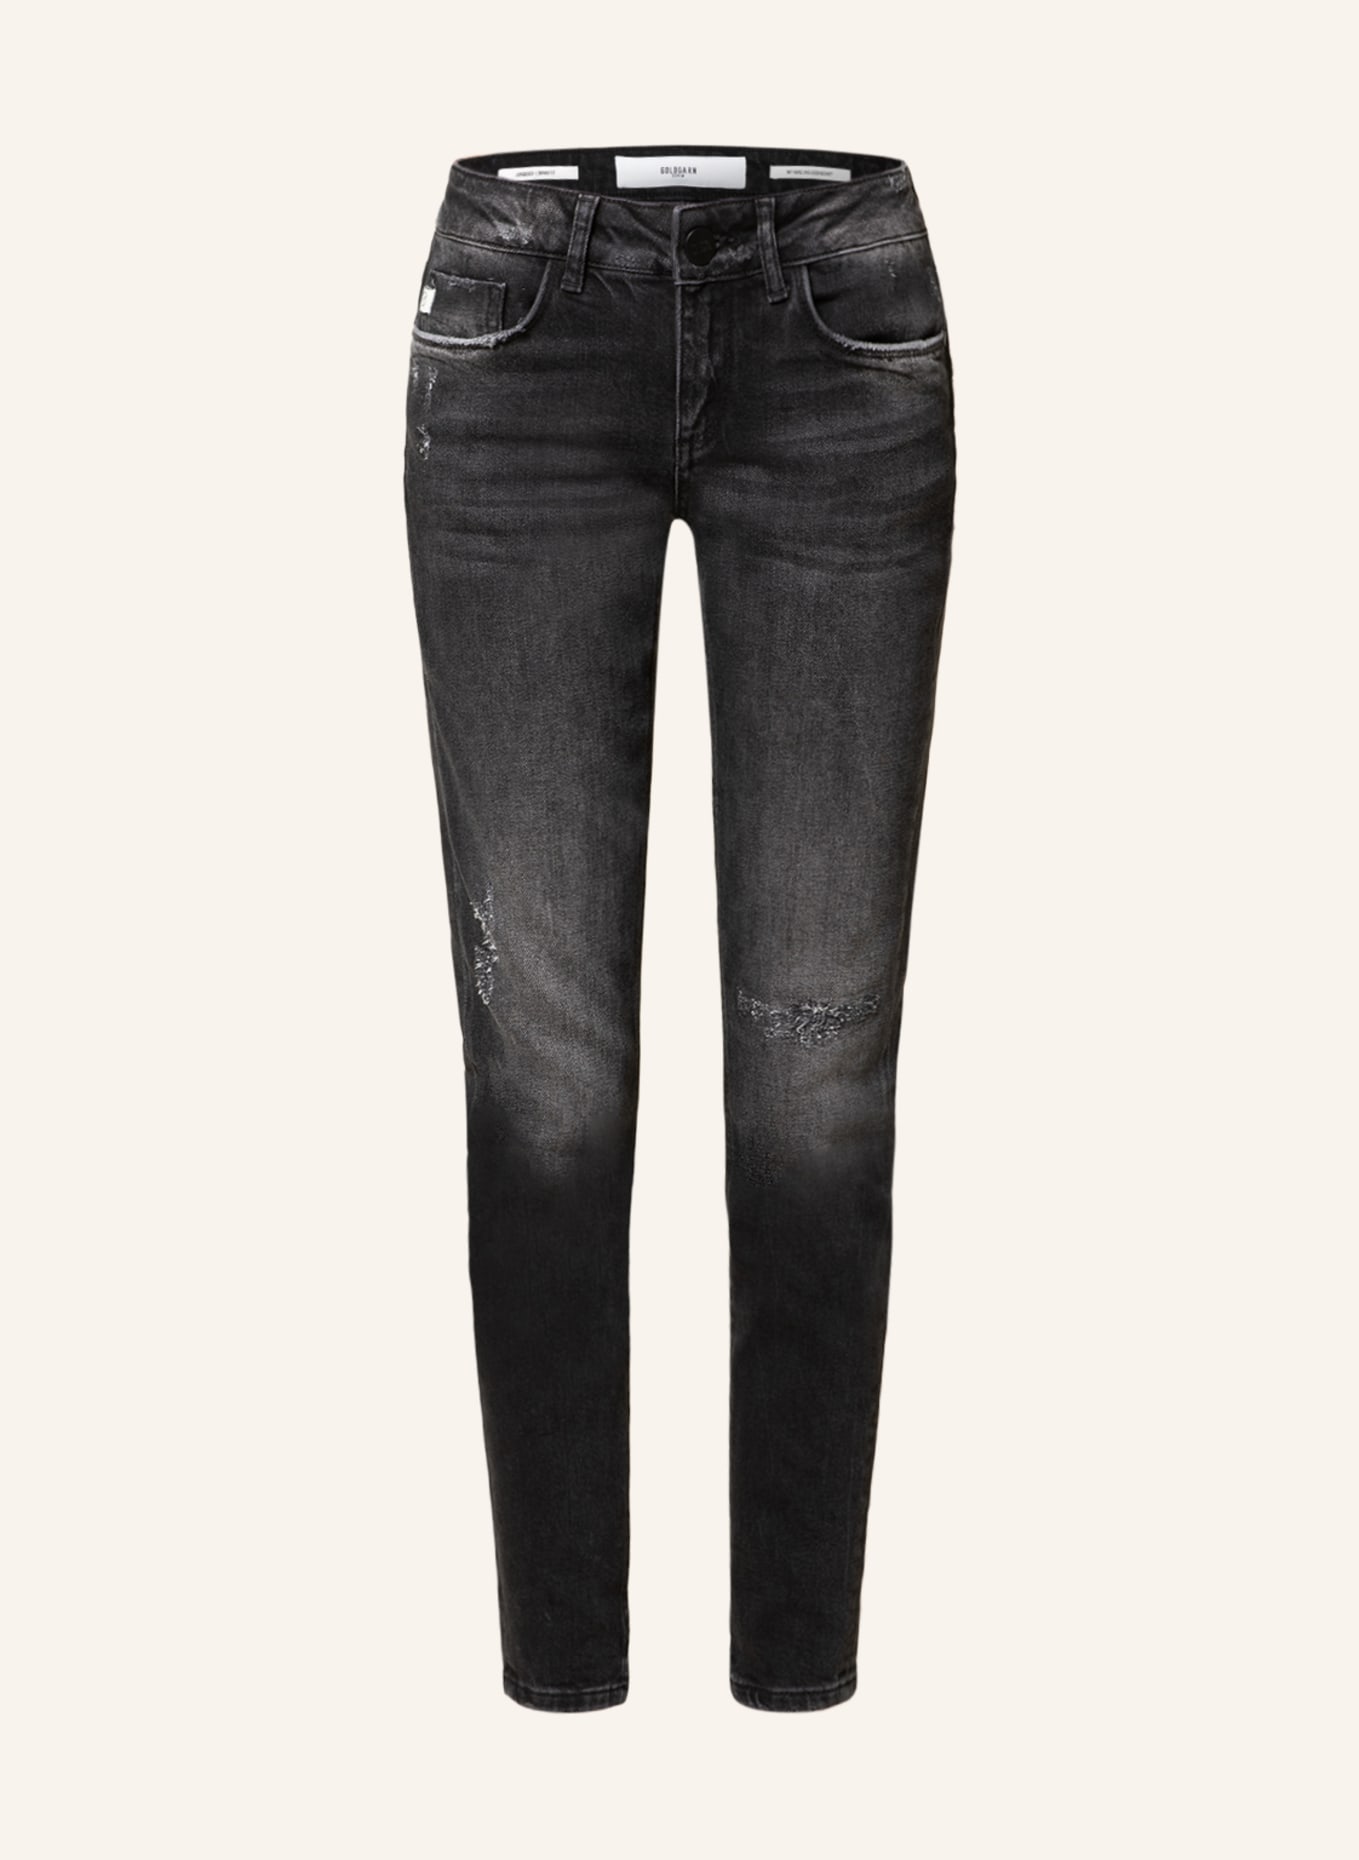 GOLDGARN DENIM Skinny jeans JUNGBUSCH, Color: 1110 vintageblack(Image null)